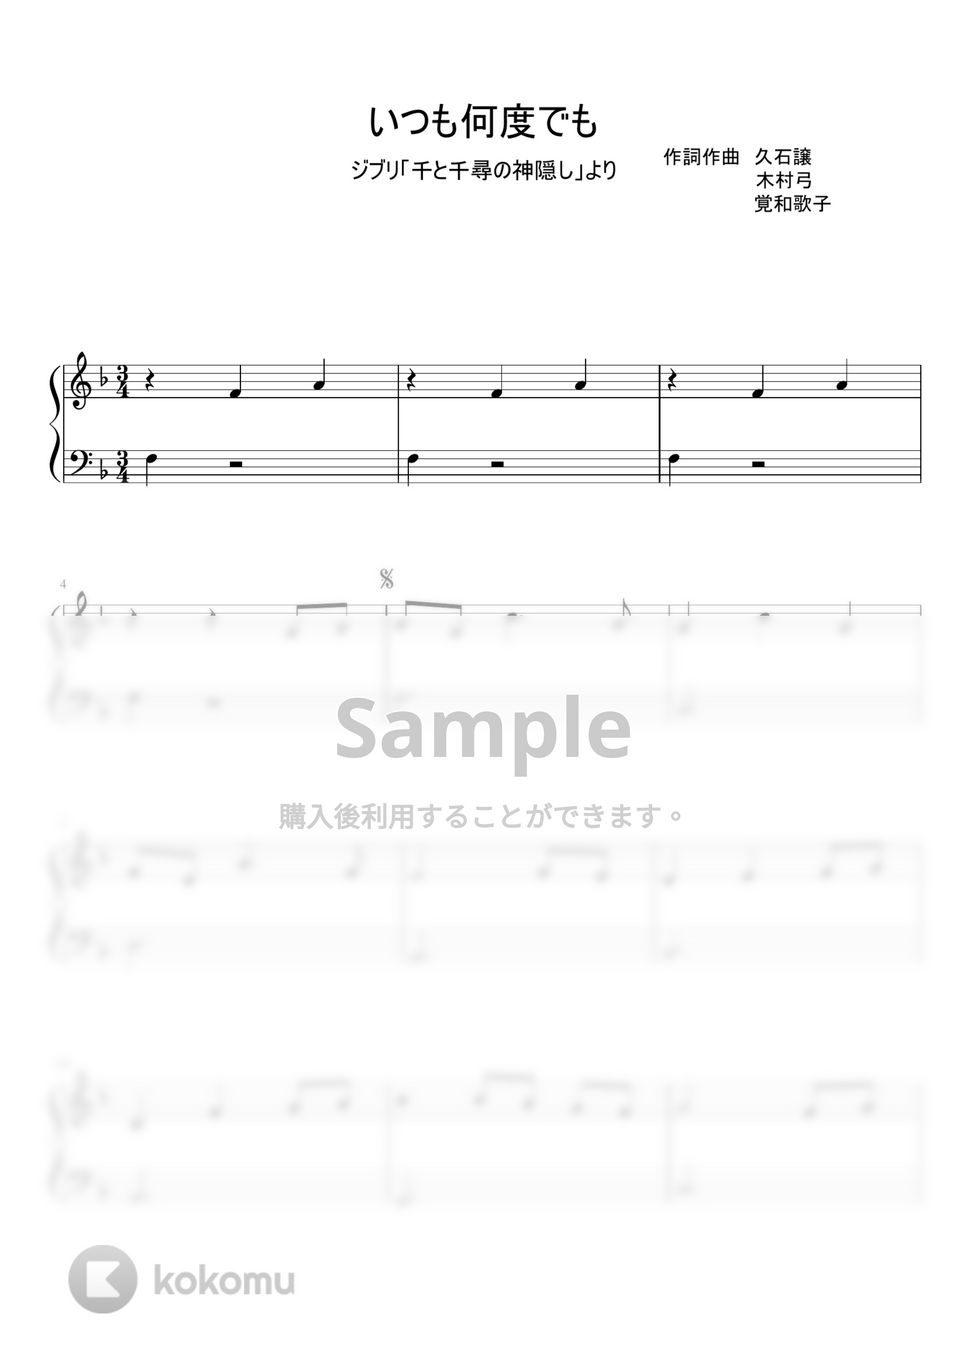 久石譲 - いつも何度でも (ピアノソロ) by pianon